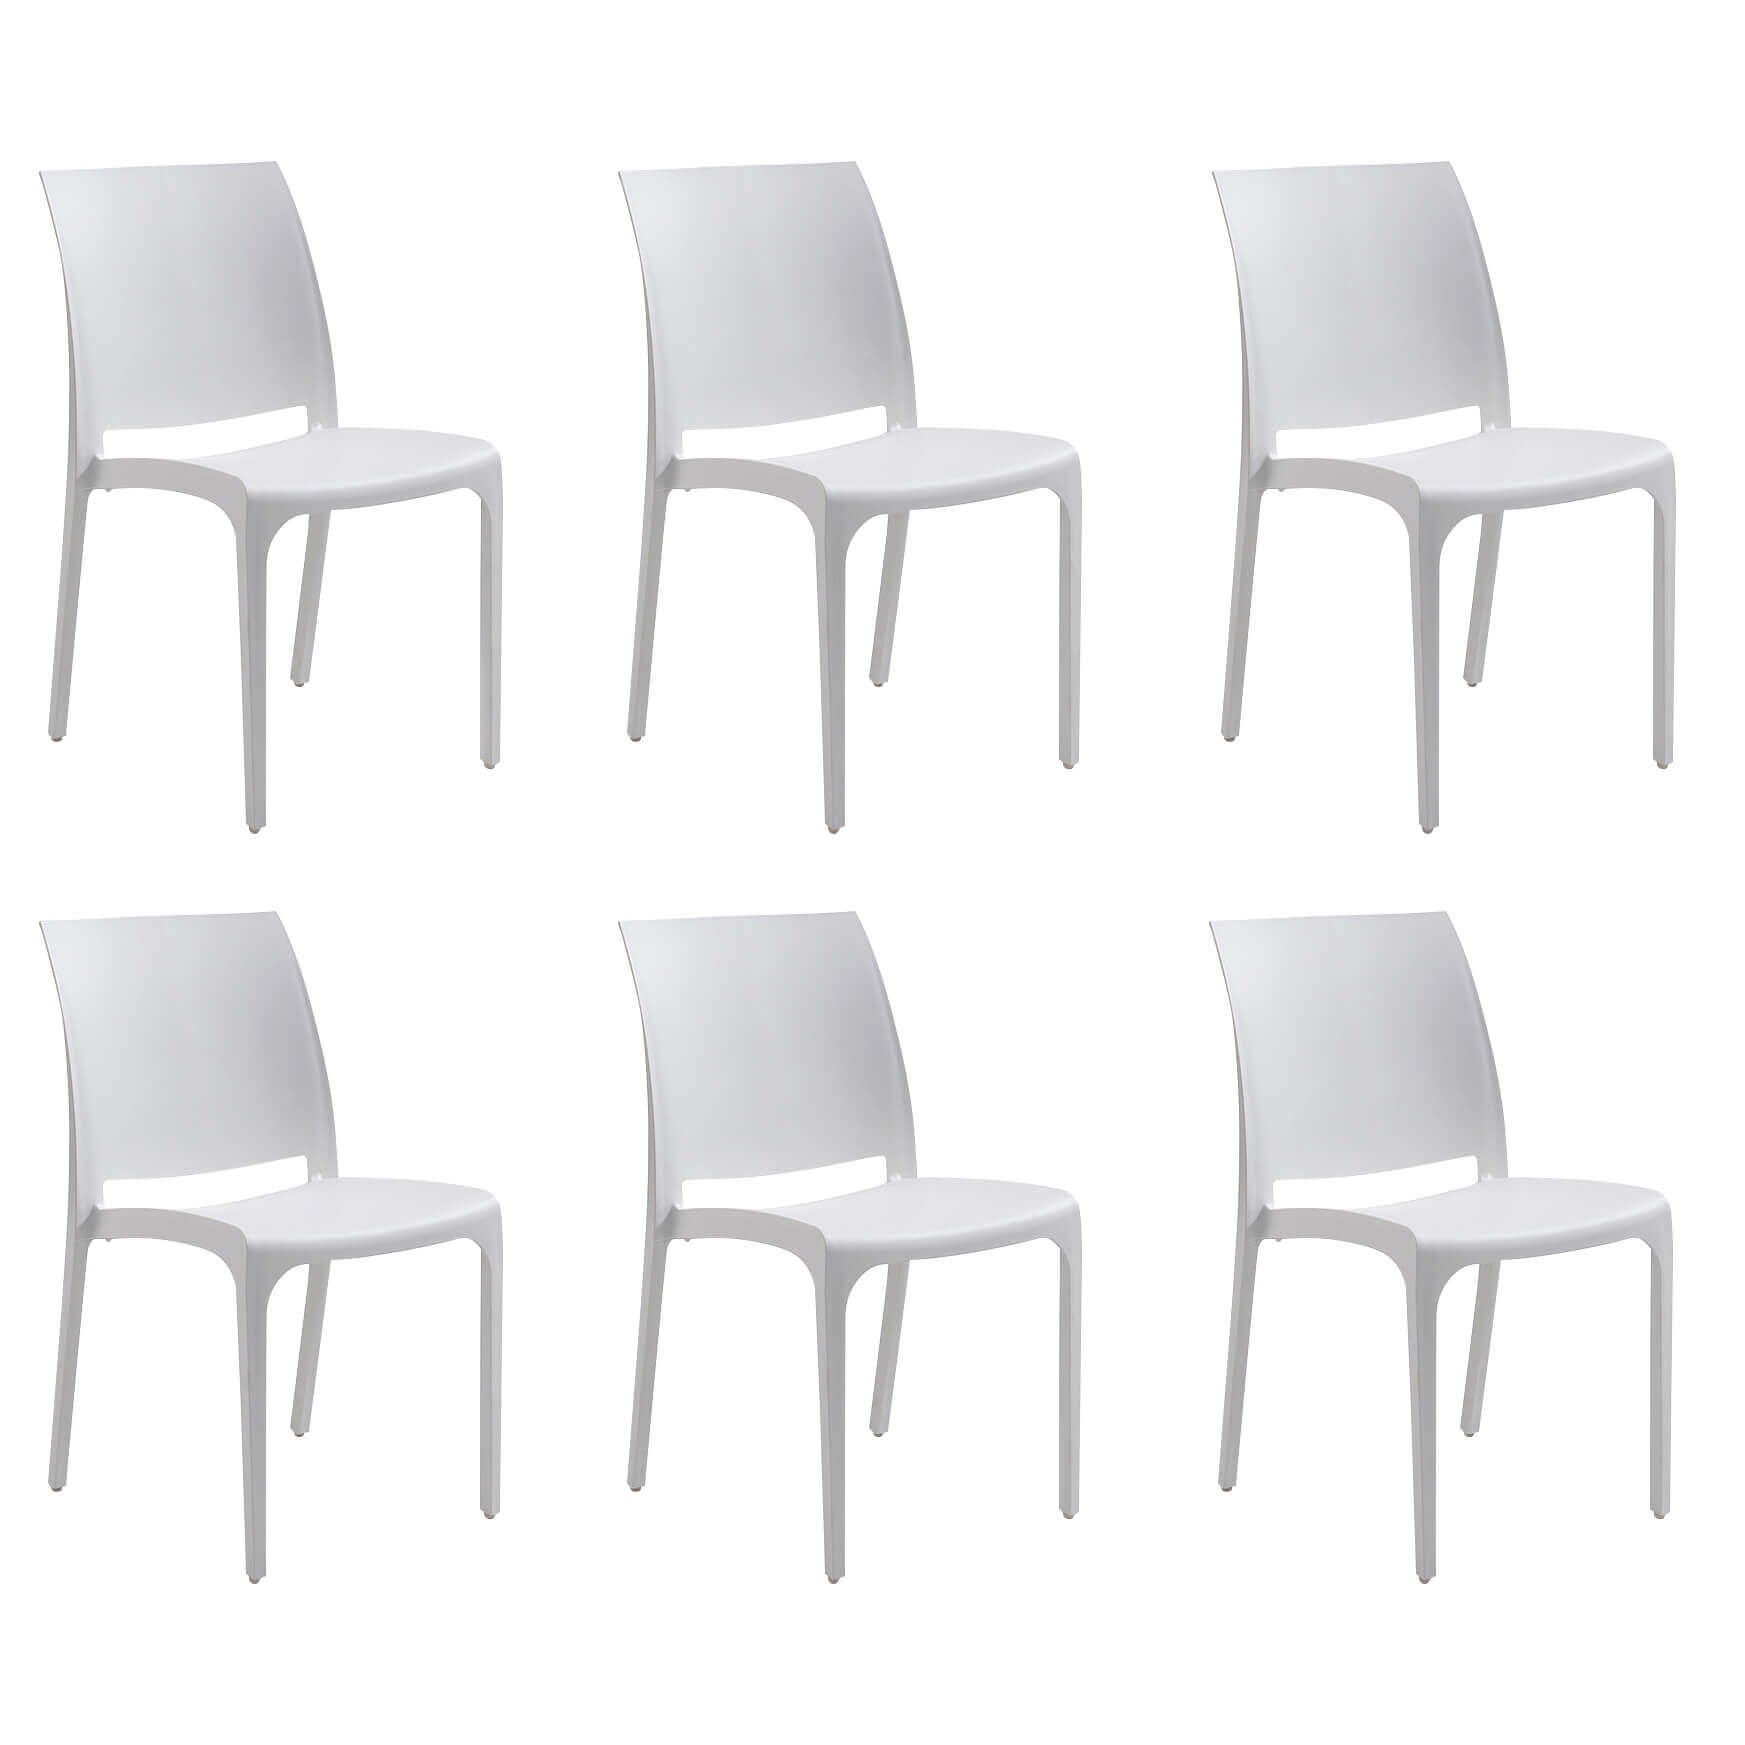 Milani Home set di 6 sedie poltrone da giardino in plastica design moderno colorata Bianco Bianco 46 x 80 x 54 cm